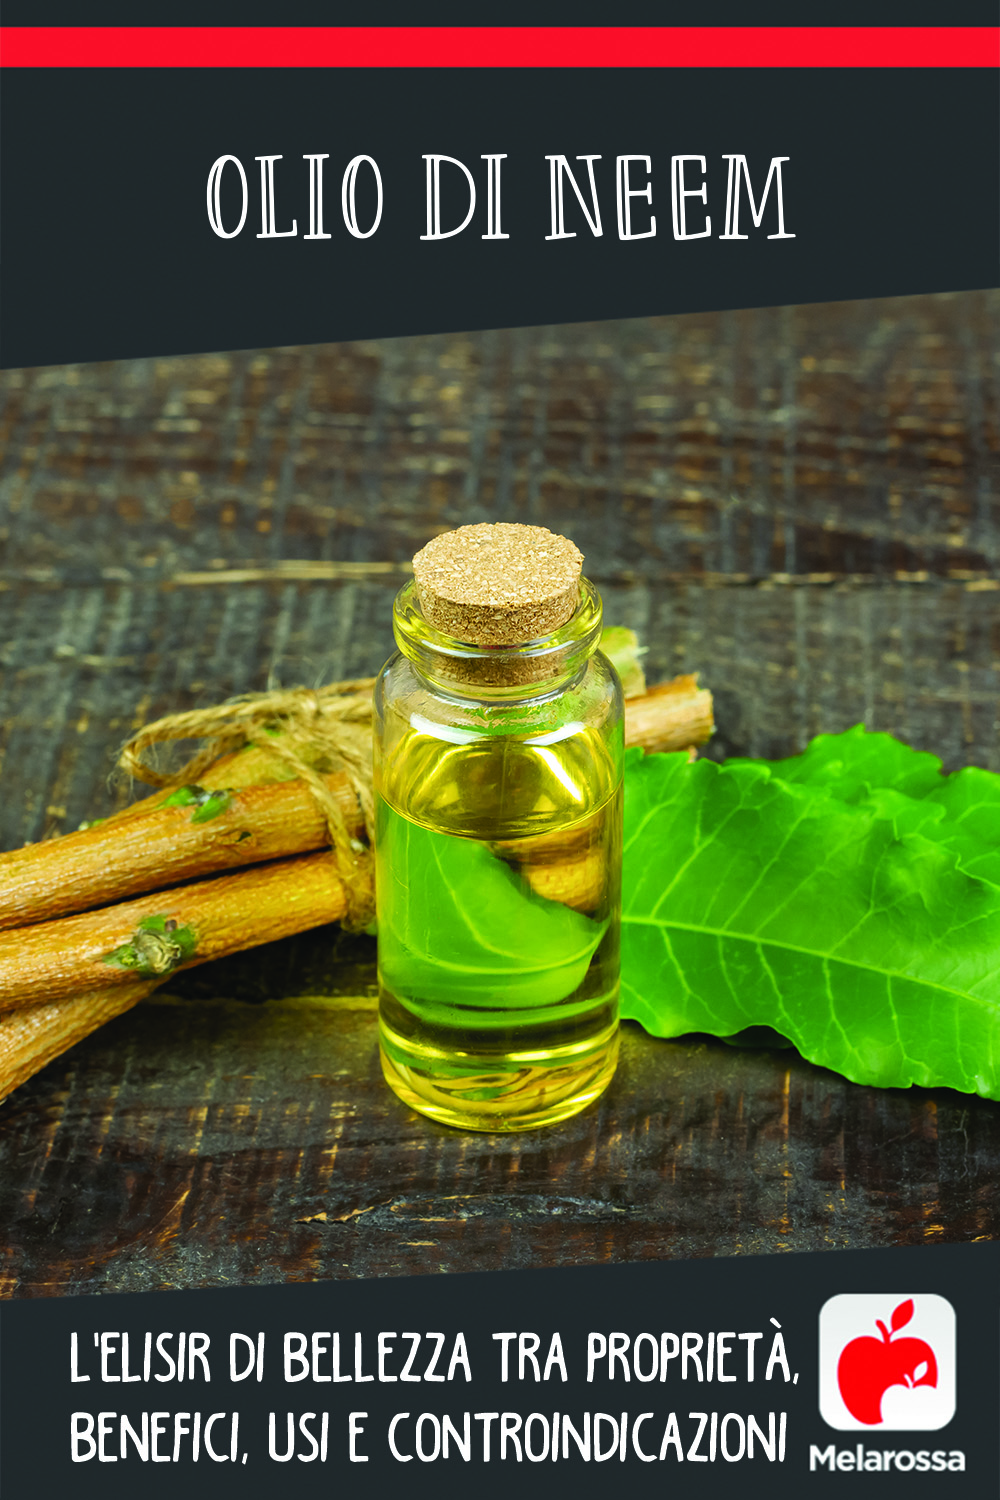 olio di neem: proprietà, usi, benefici e controindicazioni